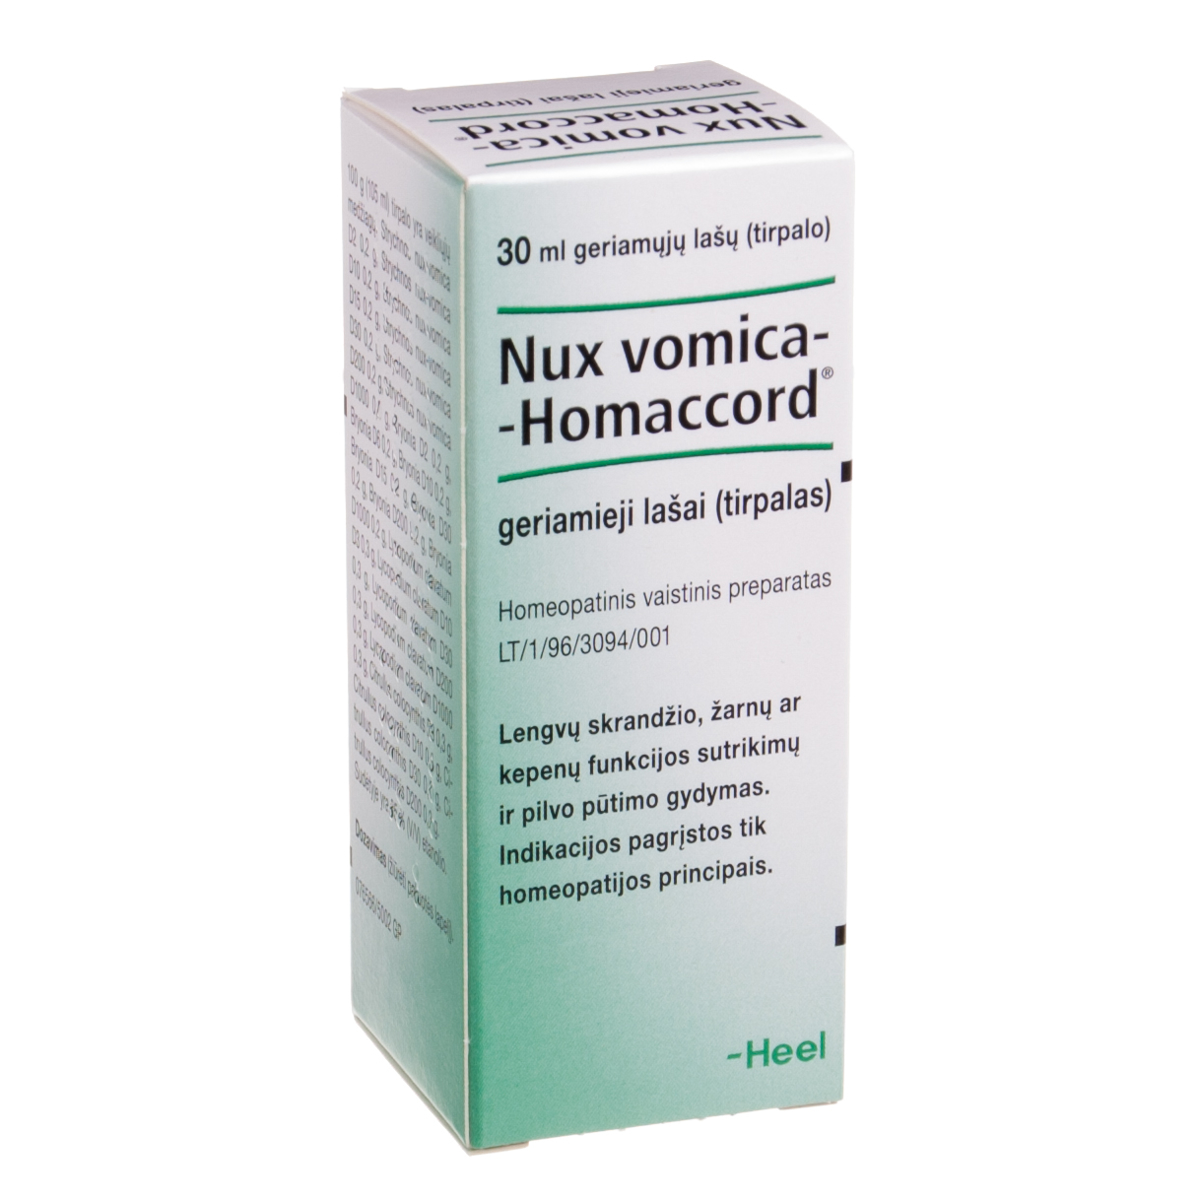 NUX VOMICA-HOMACCORD, geriamieji lašai (tirpalas), 30 ml